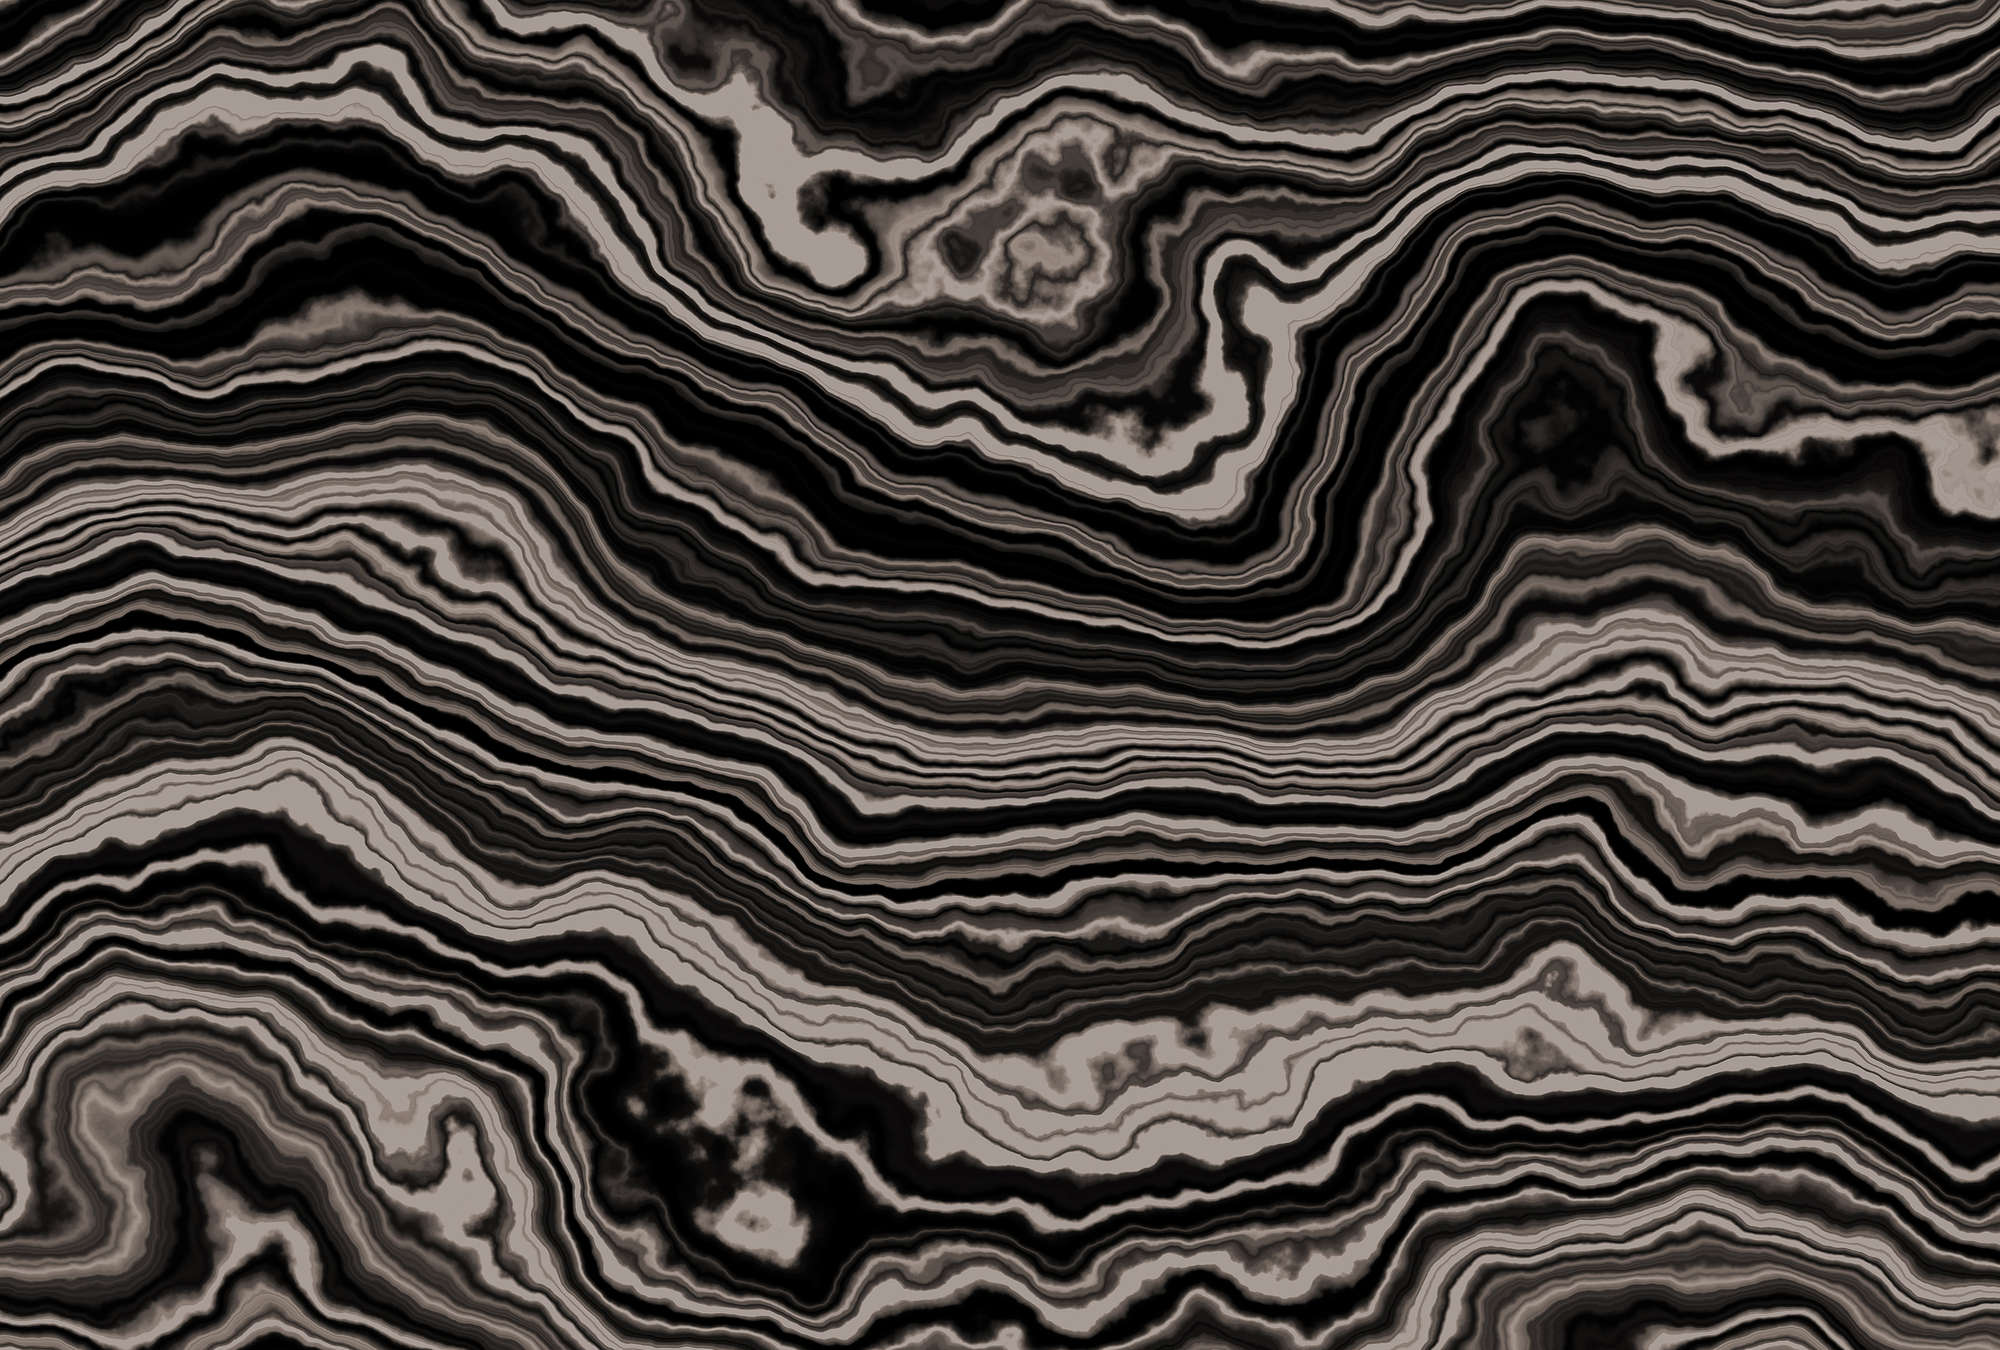             Onyx 2 - Querschnitt eines Onyx Marmor als Fototapete – Beige, Schwarz | Perlmutt Glattvlies
        